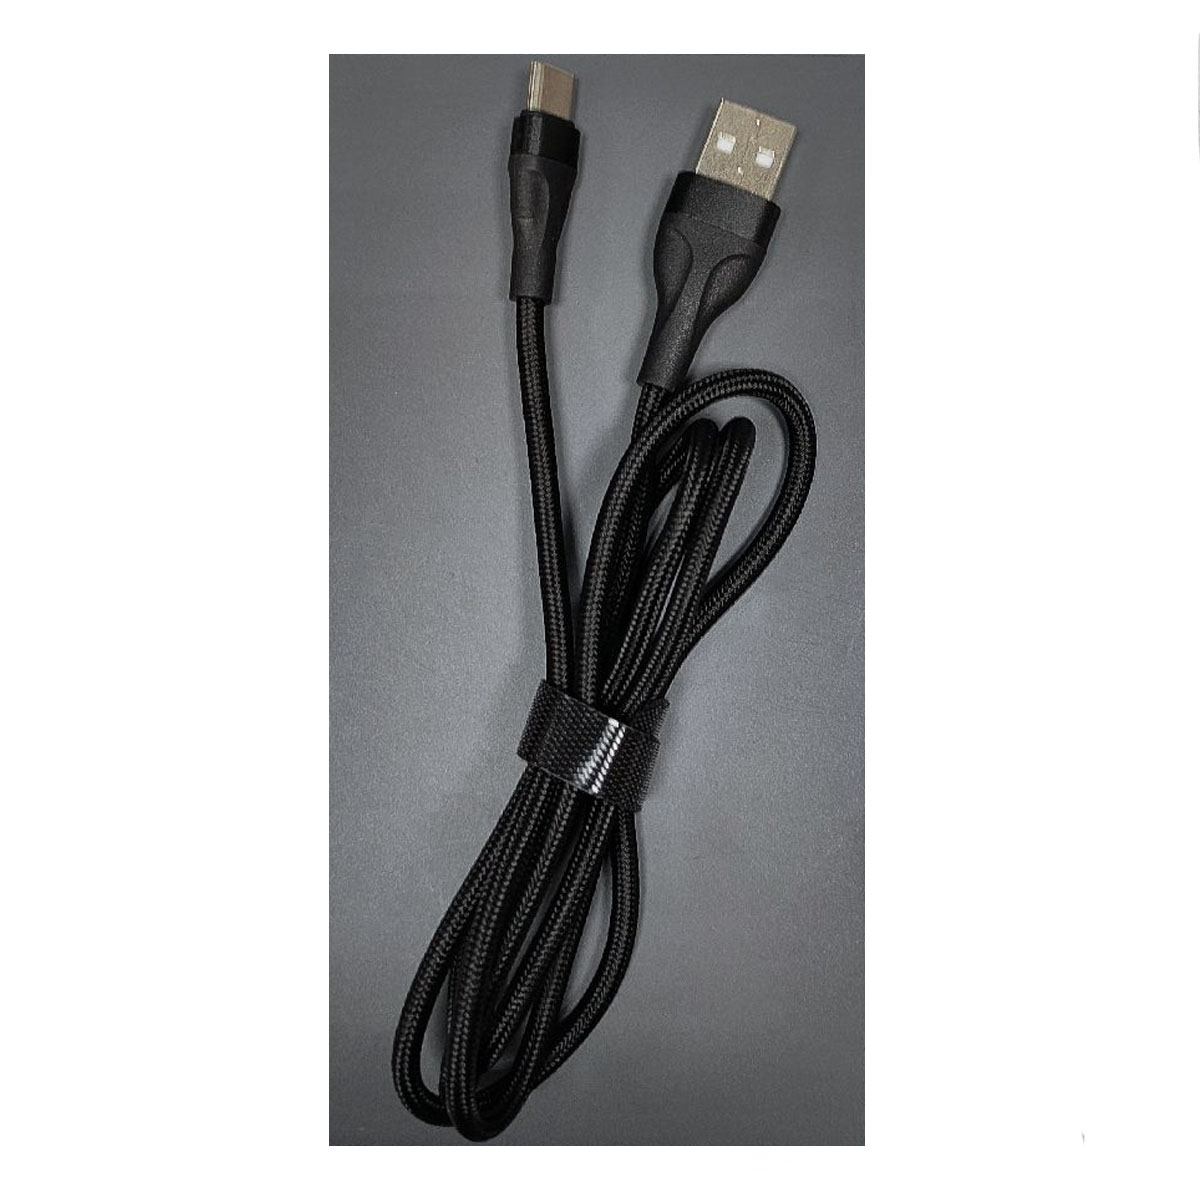 Кабель XB X35t USB Type C, длина 1 метр, цвет черный